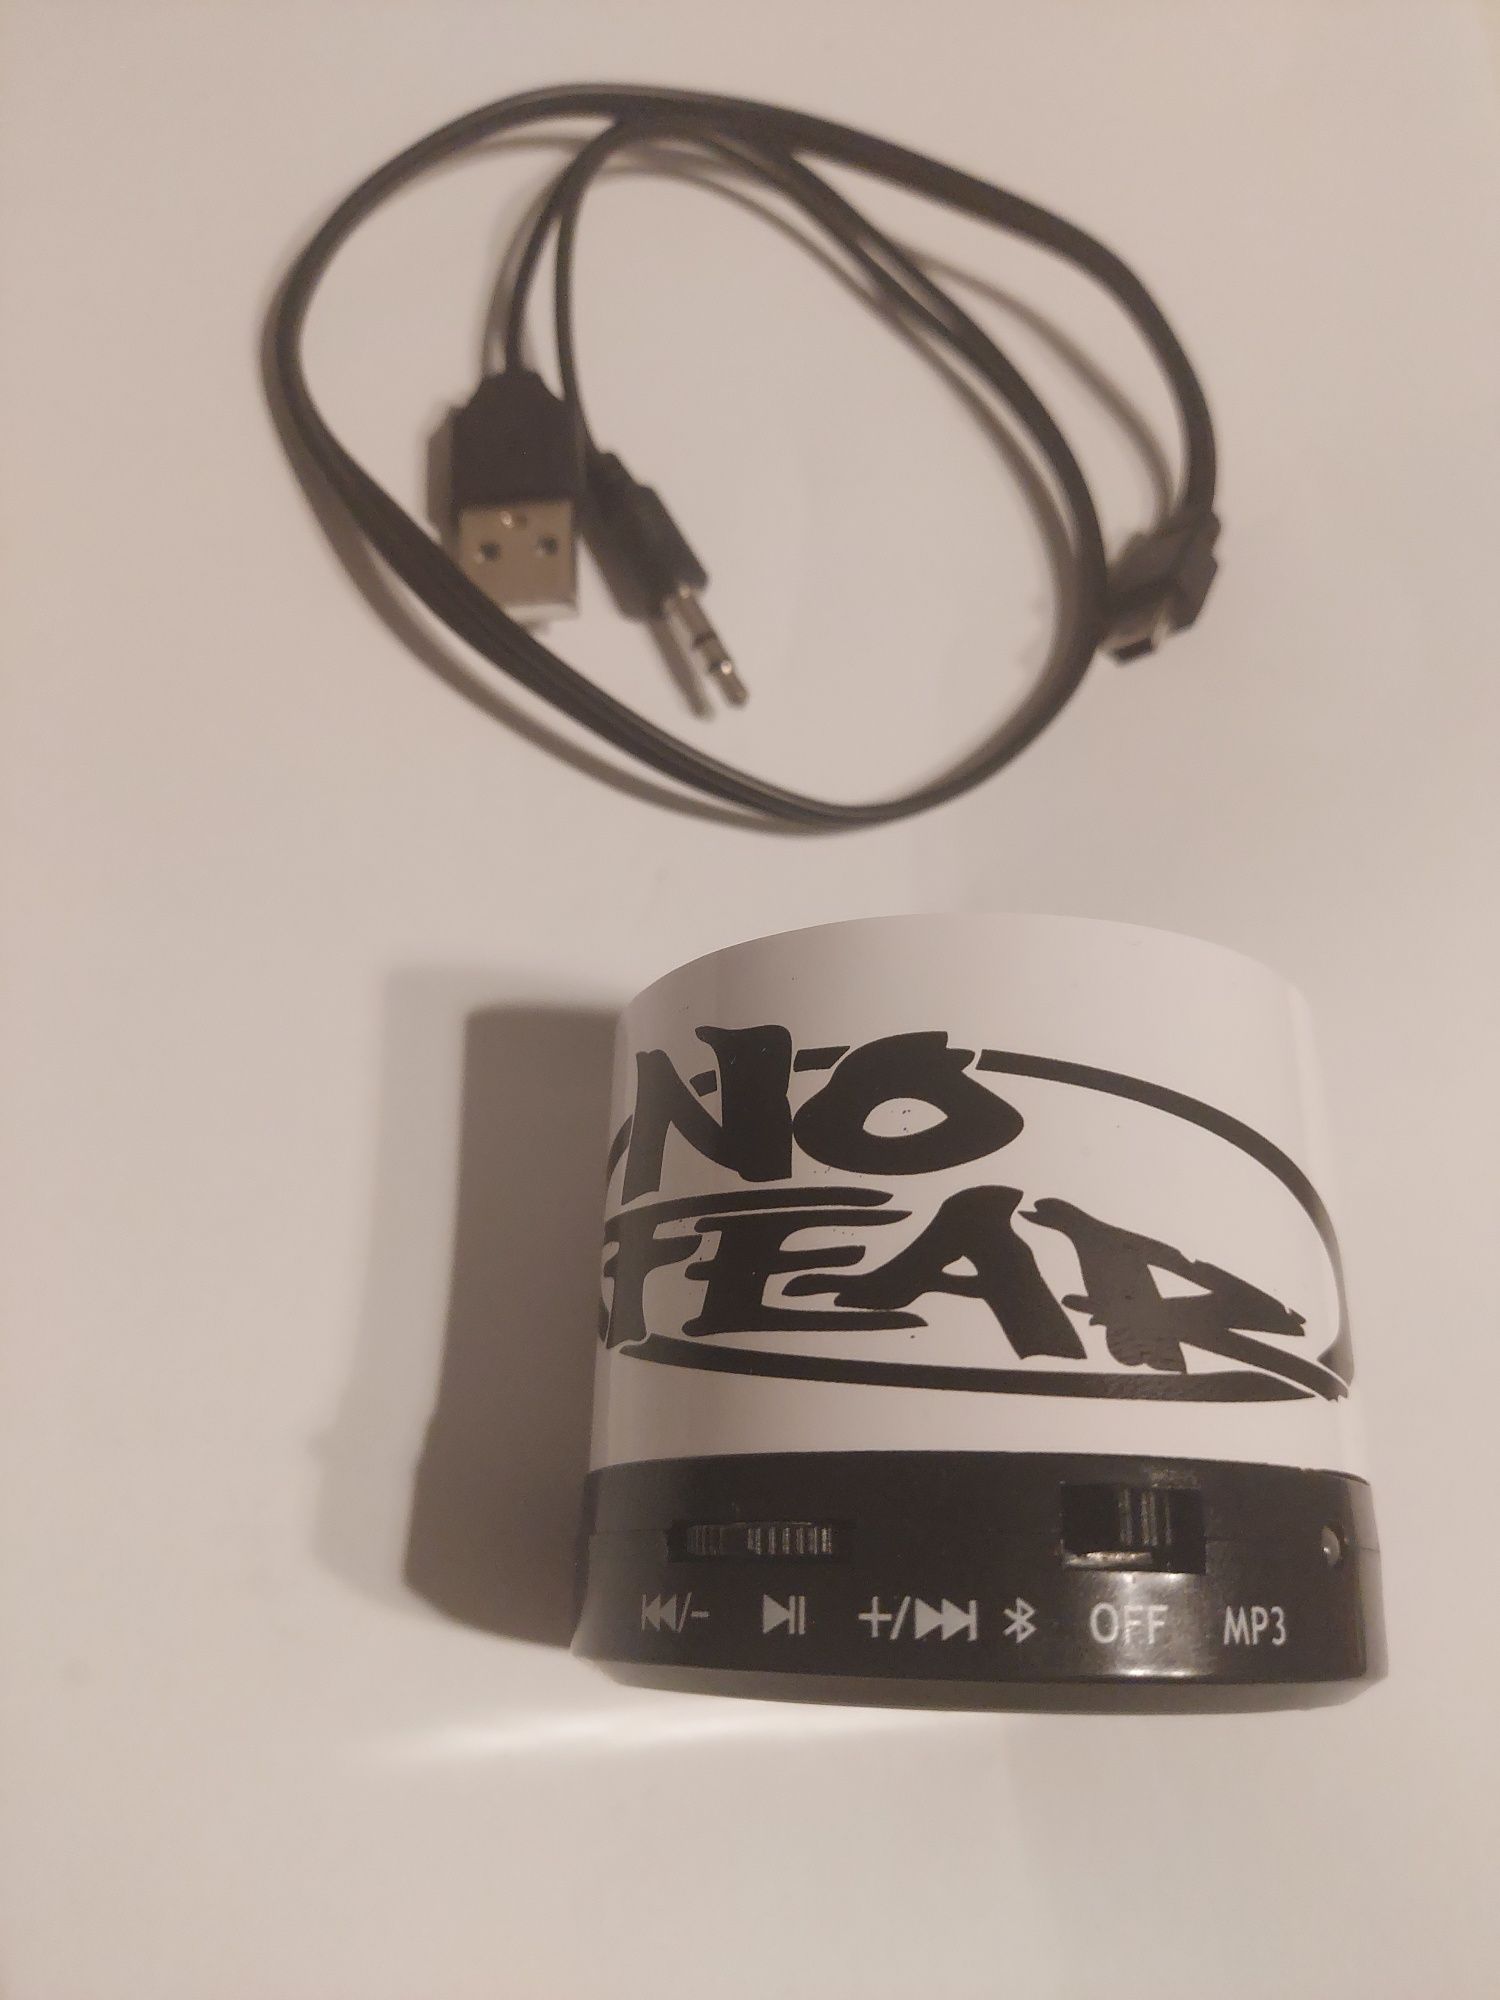 Bezprzewodowy głośnik przenośny Bluetooth turystyczny tele MP3 microSD